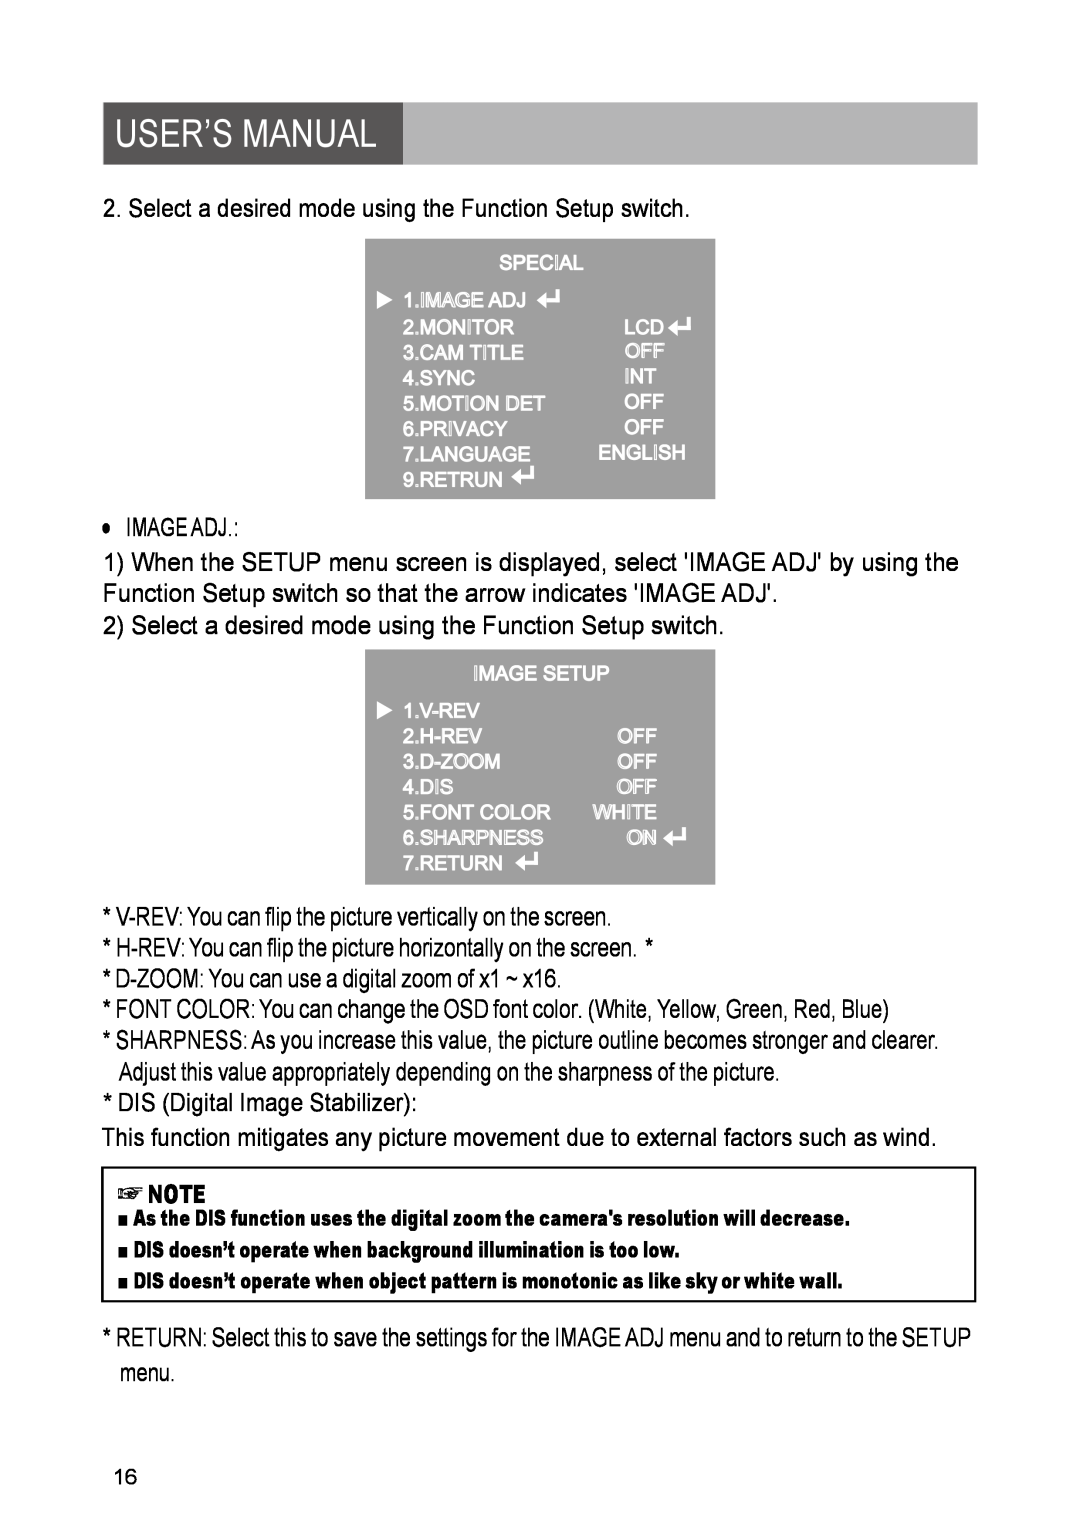 Yahee RETRT2812-1 manual User’S Manual, Wh Te 